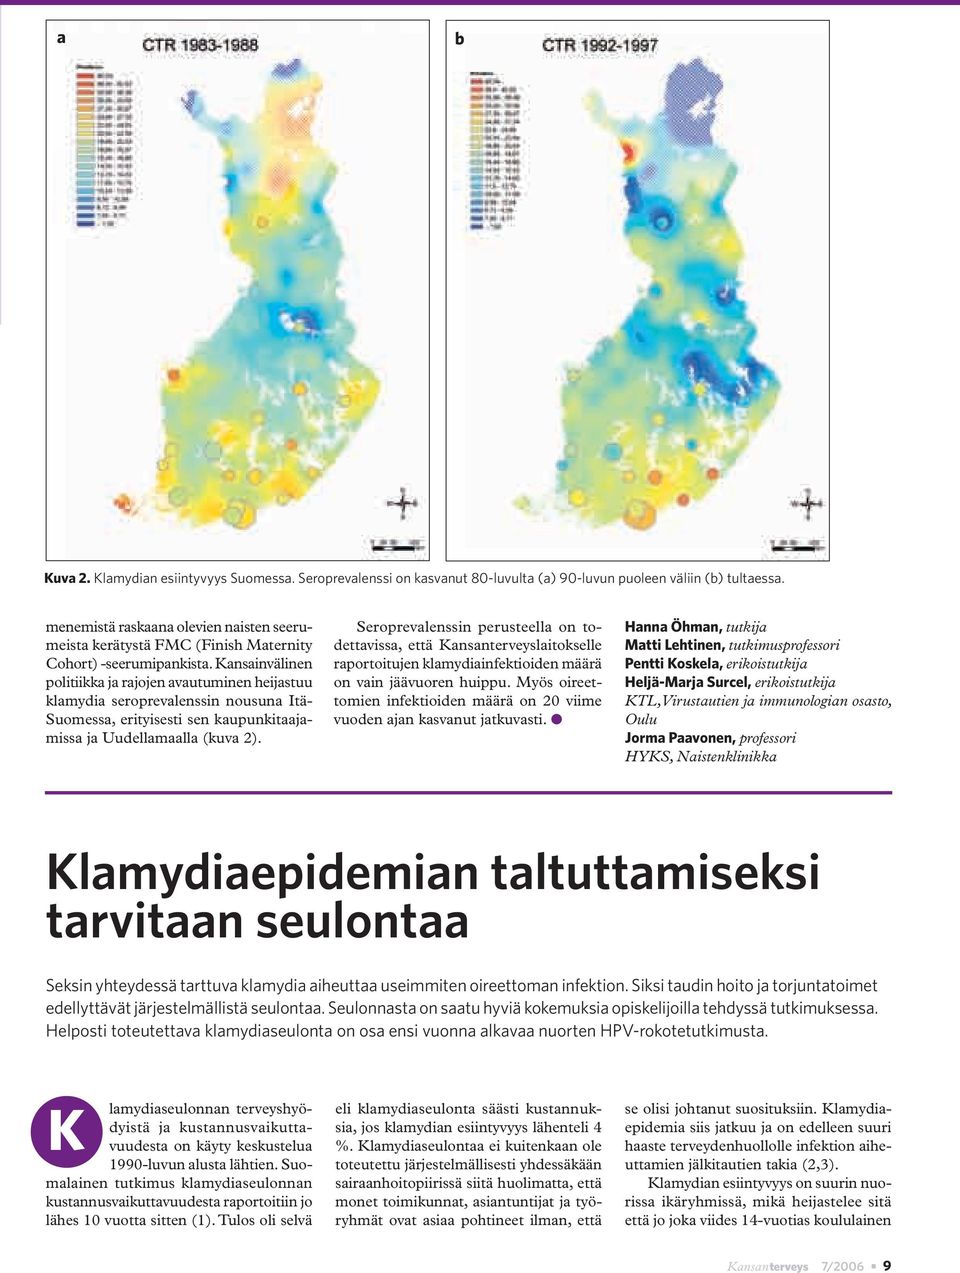 Kansainvälinen politiikka ja rajojen avautuminen heijastuu klamydia seroprevalenssin nousuna Itä- Suomessa, erityisesti sen kaupunkitaajamissa ja Uudellamaalla (kuva 2).